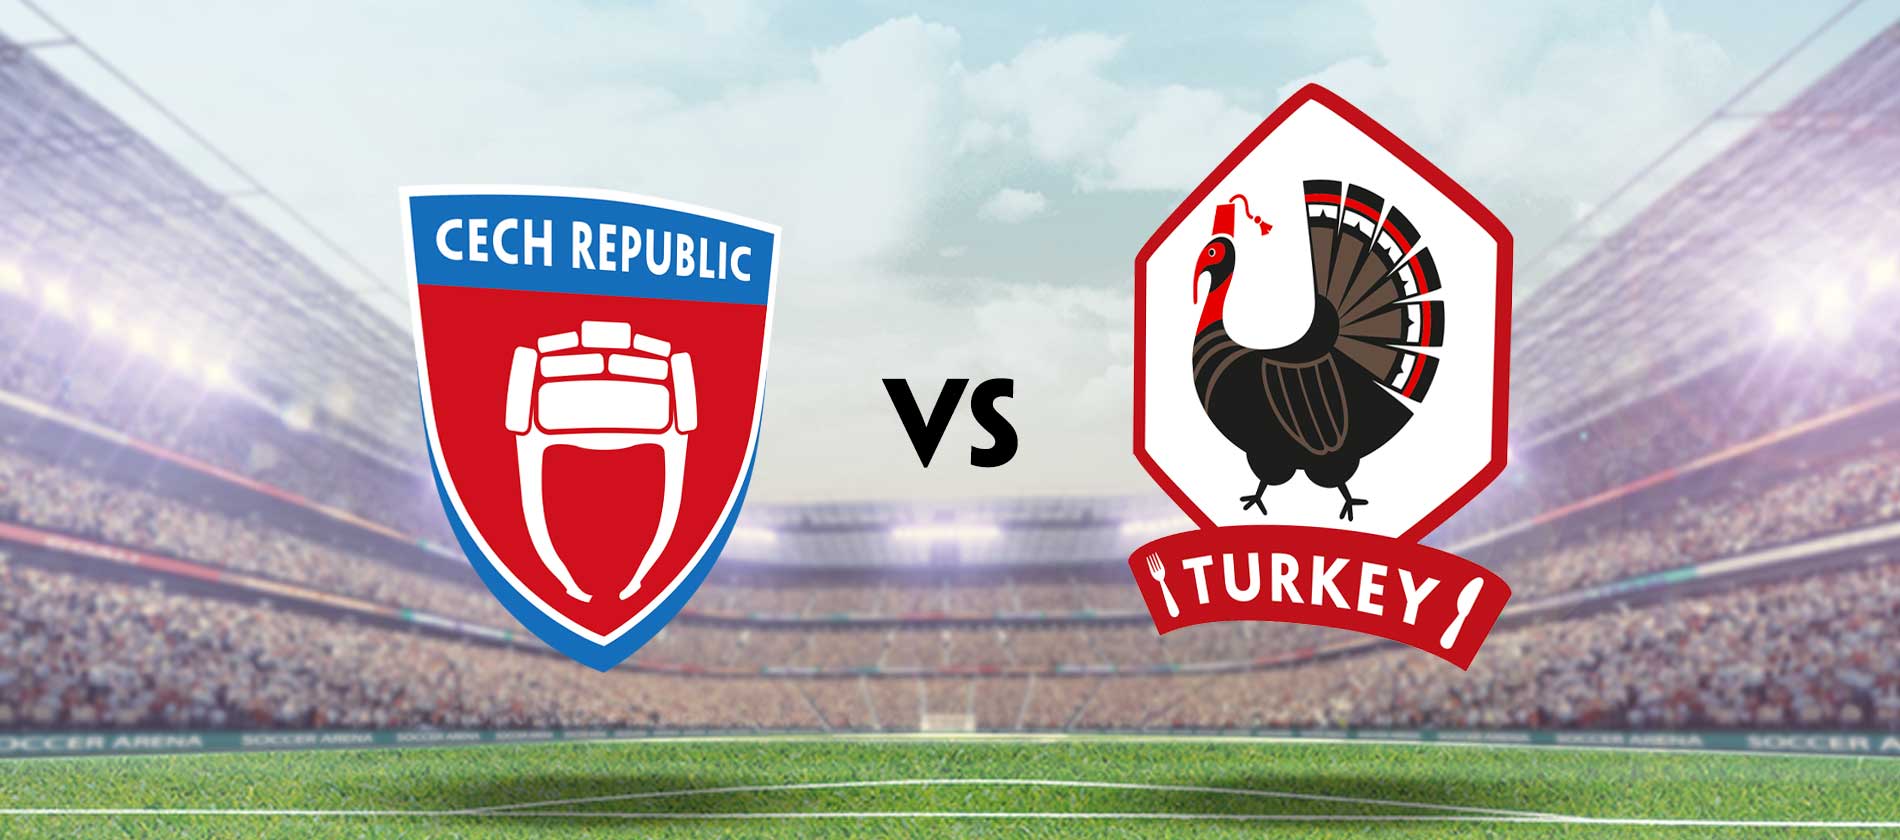 Czech Republic vs Turkey